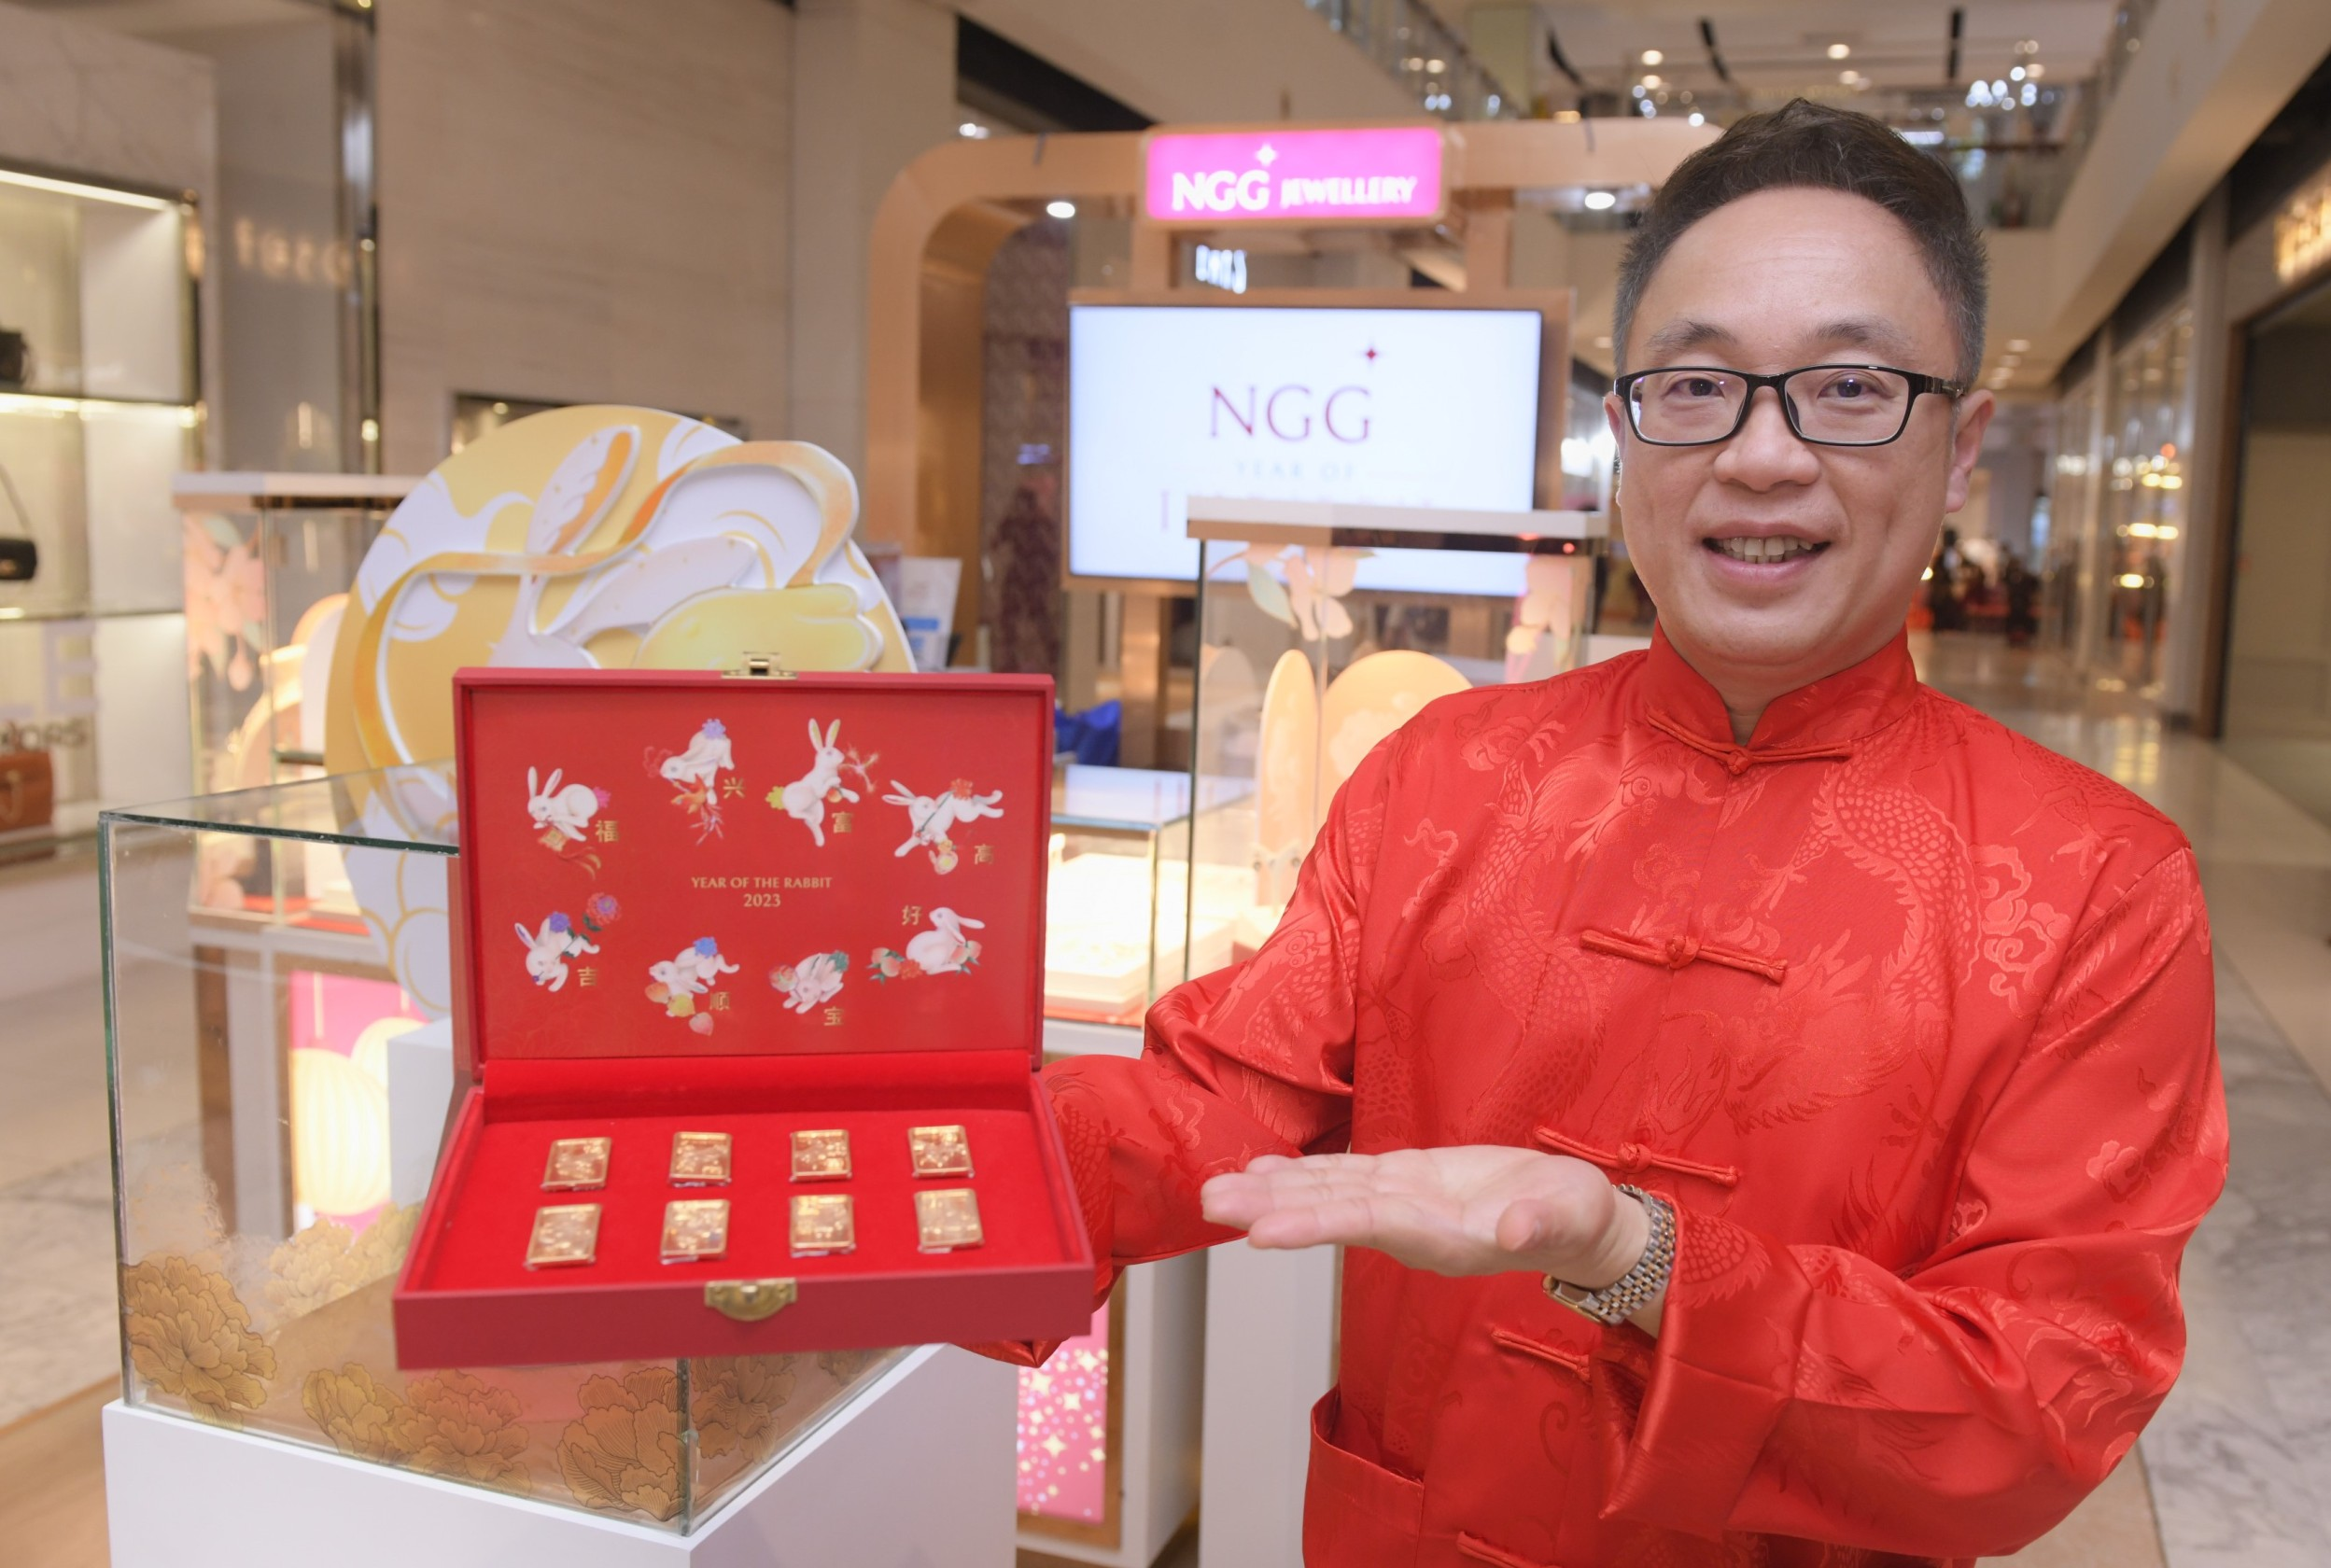 NGG JEWELLERY แท็กทีม เซ็นทรัล ฉลองตรุษจีน ส่ง เซ็ททองคำกระต่ายมงคล ลงตลาด ต้อนรับปีกระต่ายทอง